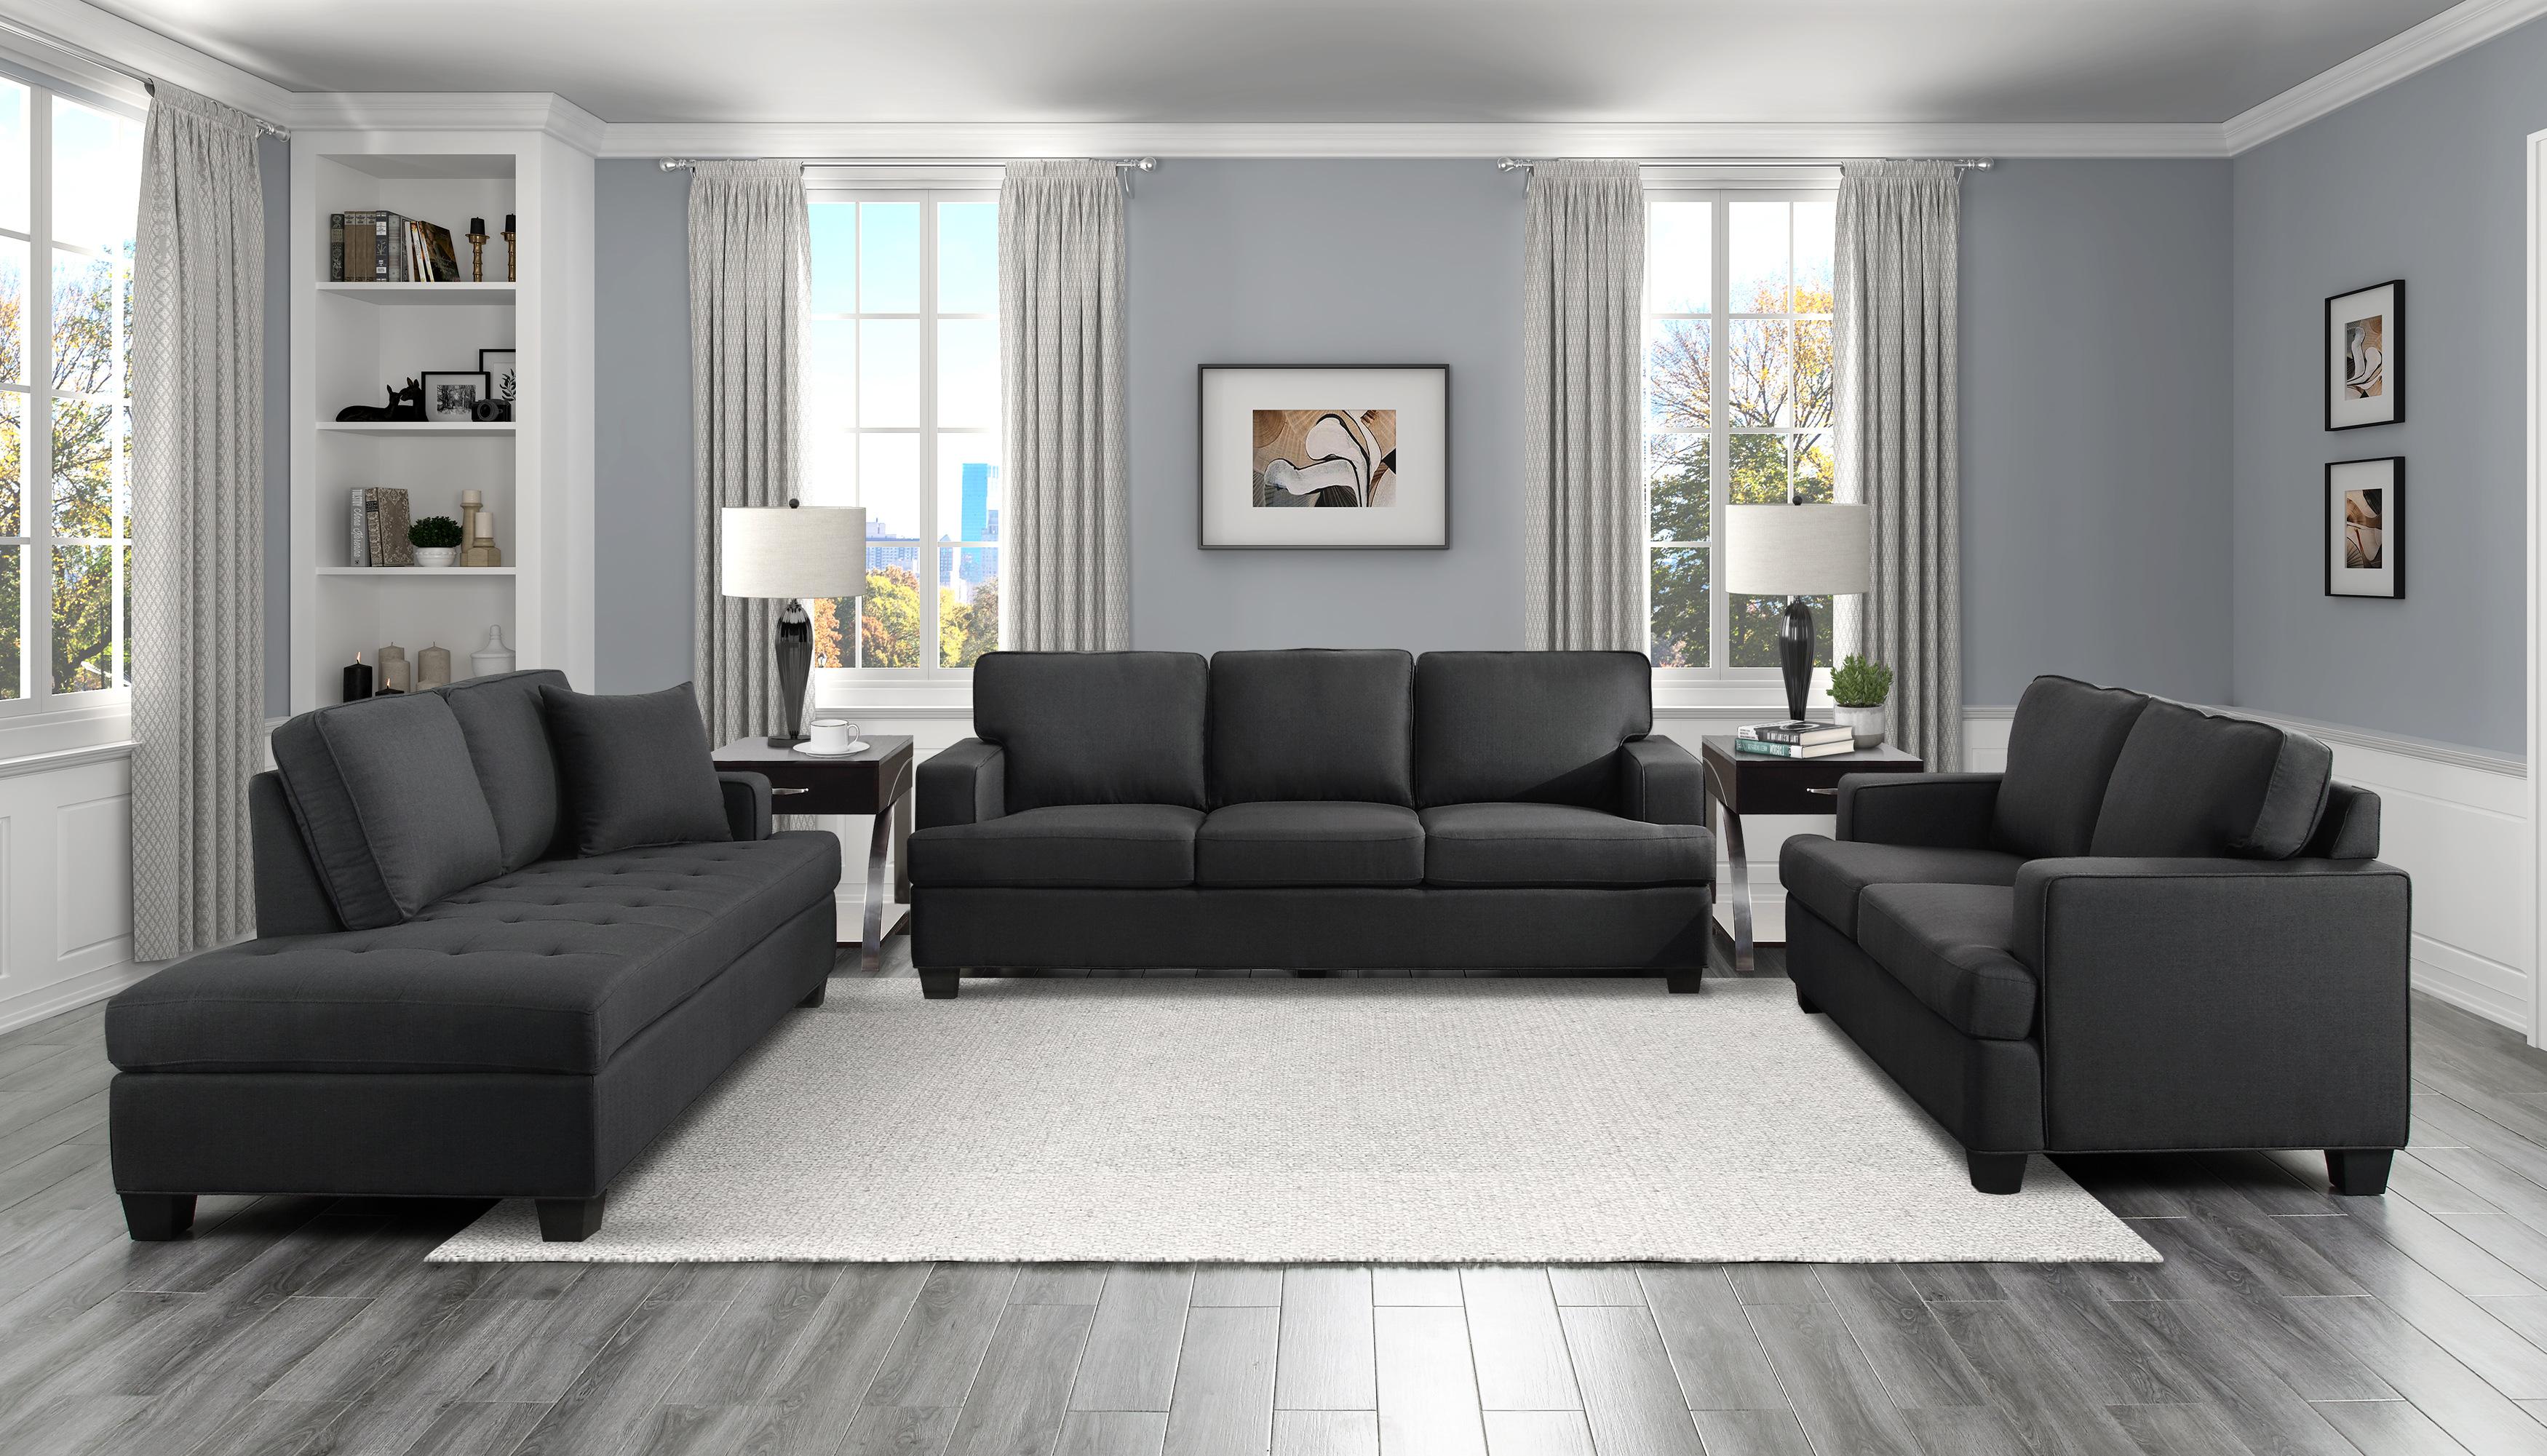 

    
Transitional Black Solid Wood Living Room Set 3pcs Homelegance 9327BK Elmont
